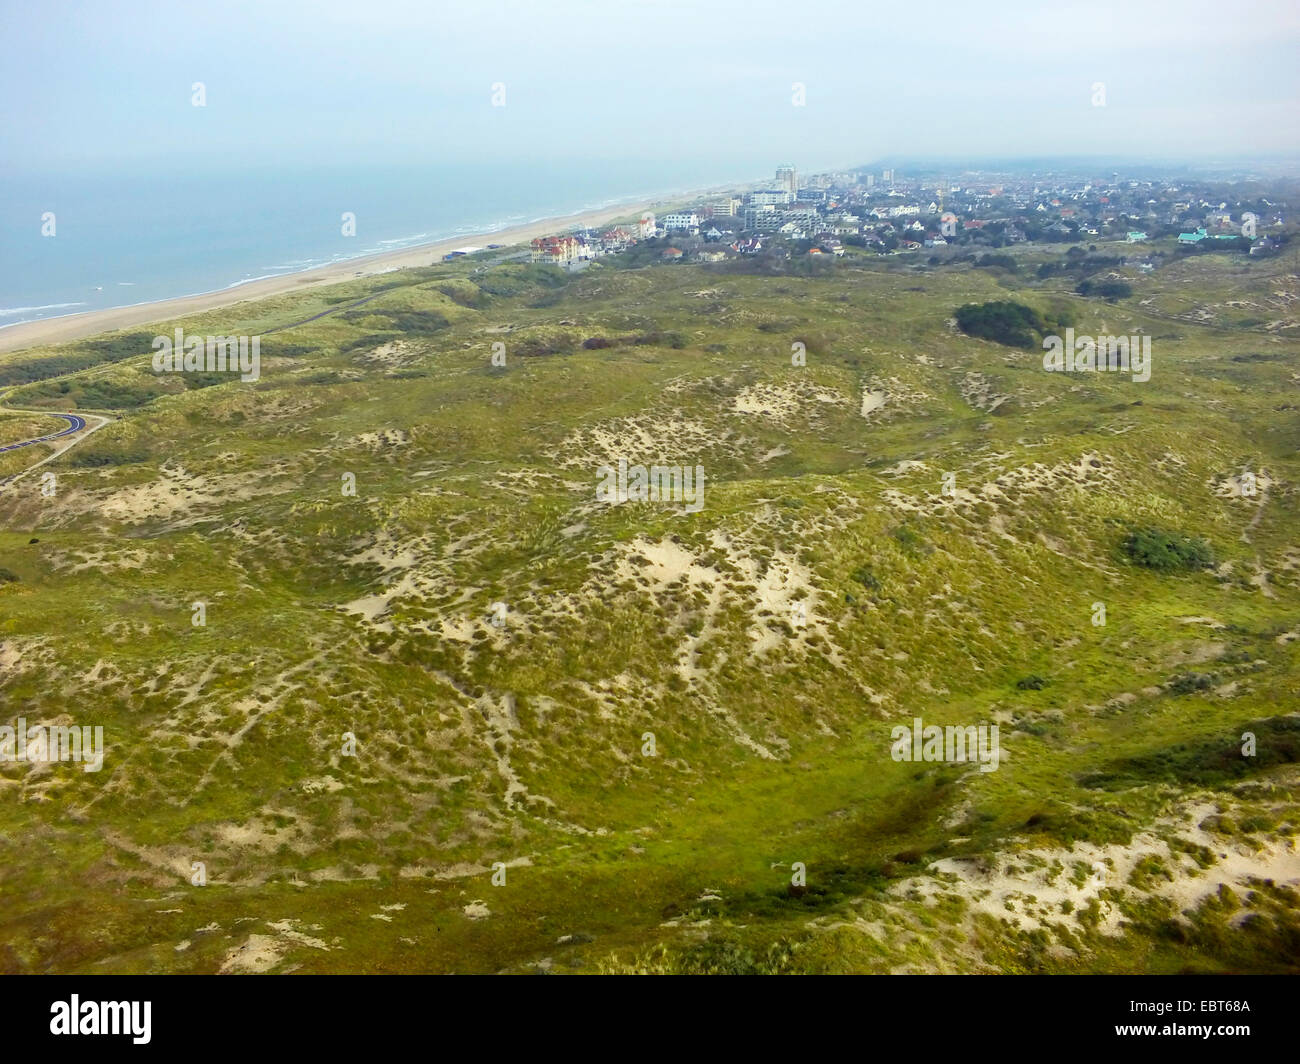 aerial view to grass-grown dune landscape at the North Sea Coast, Nordwijk aan Zee in background, Netherlands, Coepelduynen, Noordwijk aan Zee Stock Photo